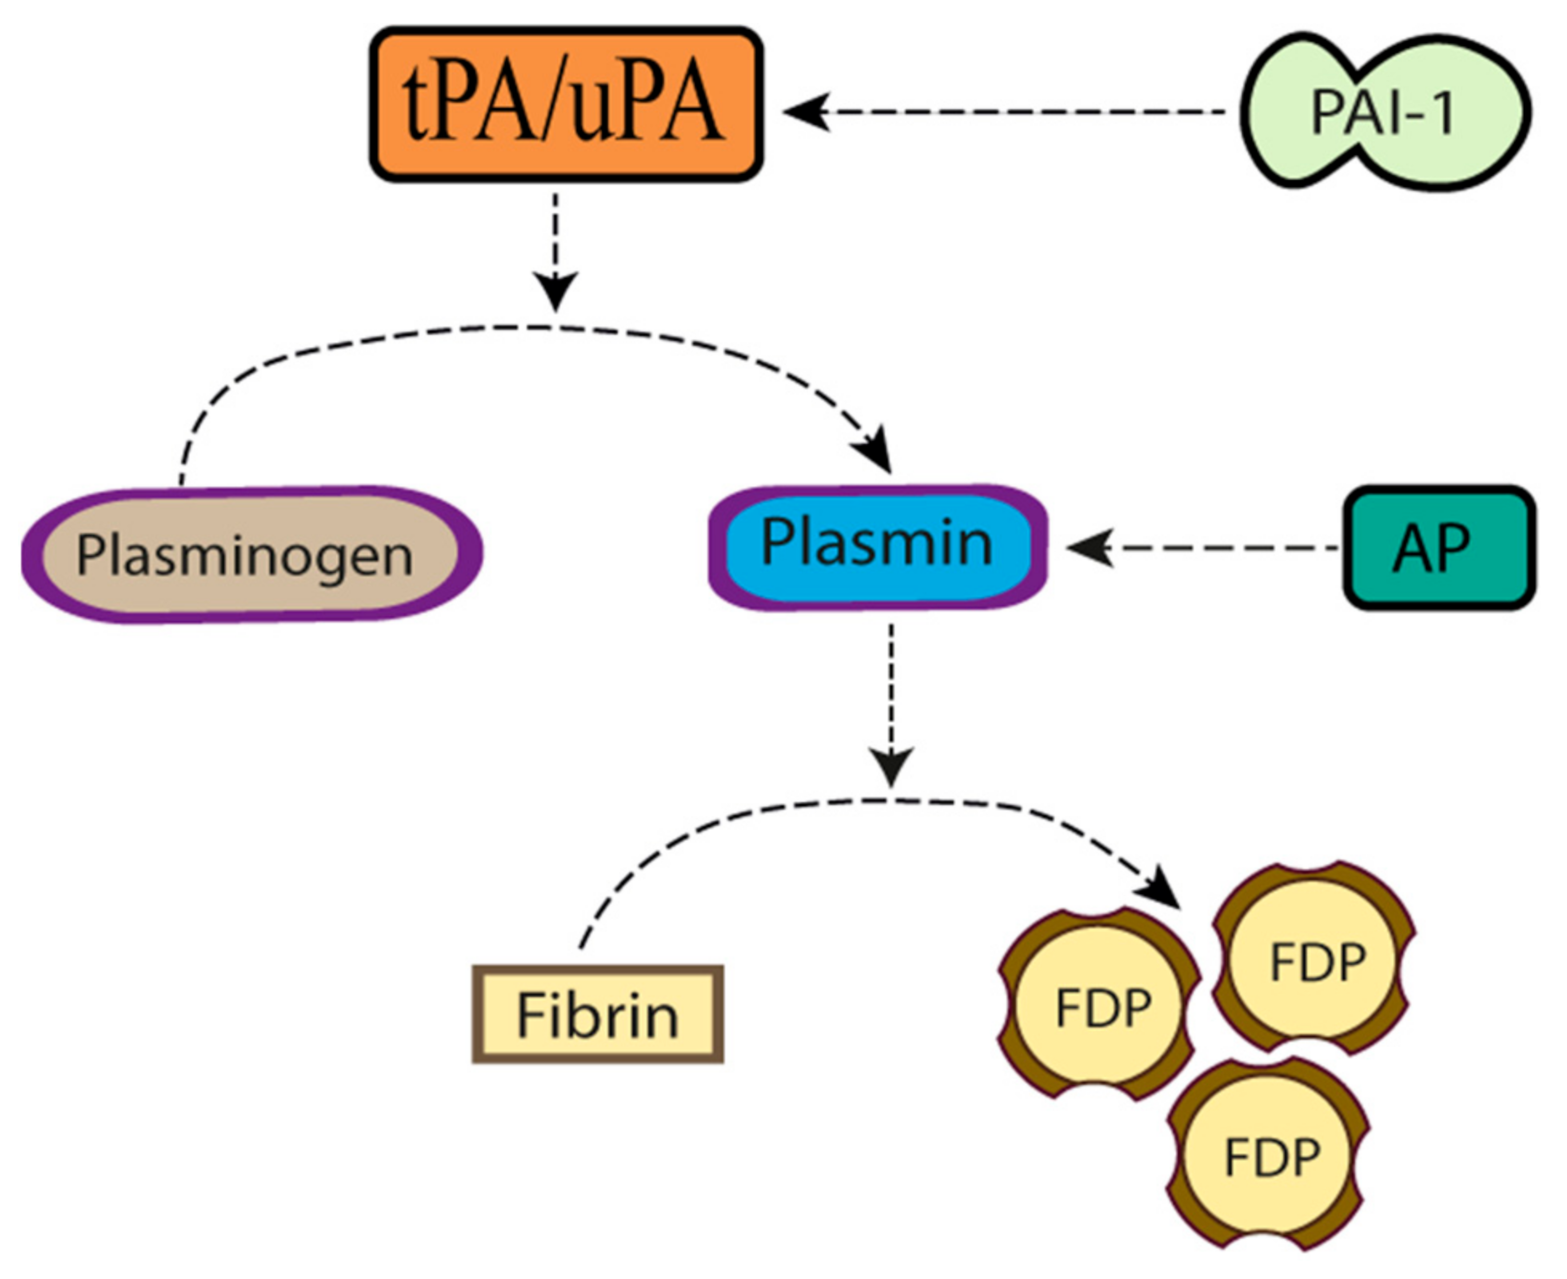 Plasminogen activator inhibitor-1 production is pathogenetic in